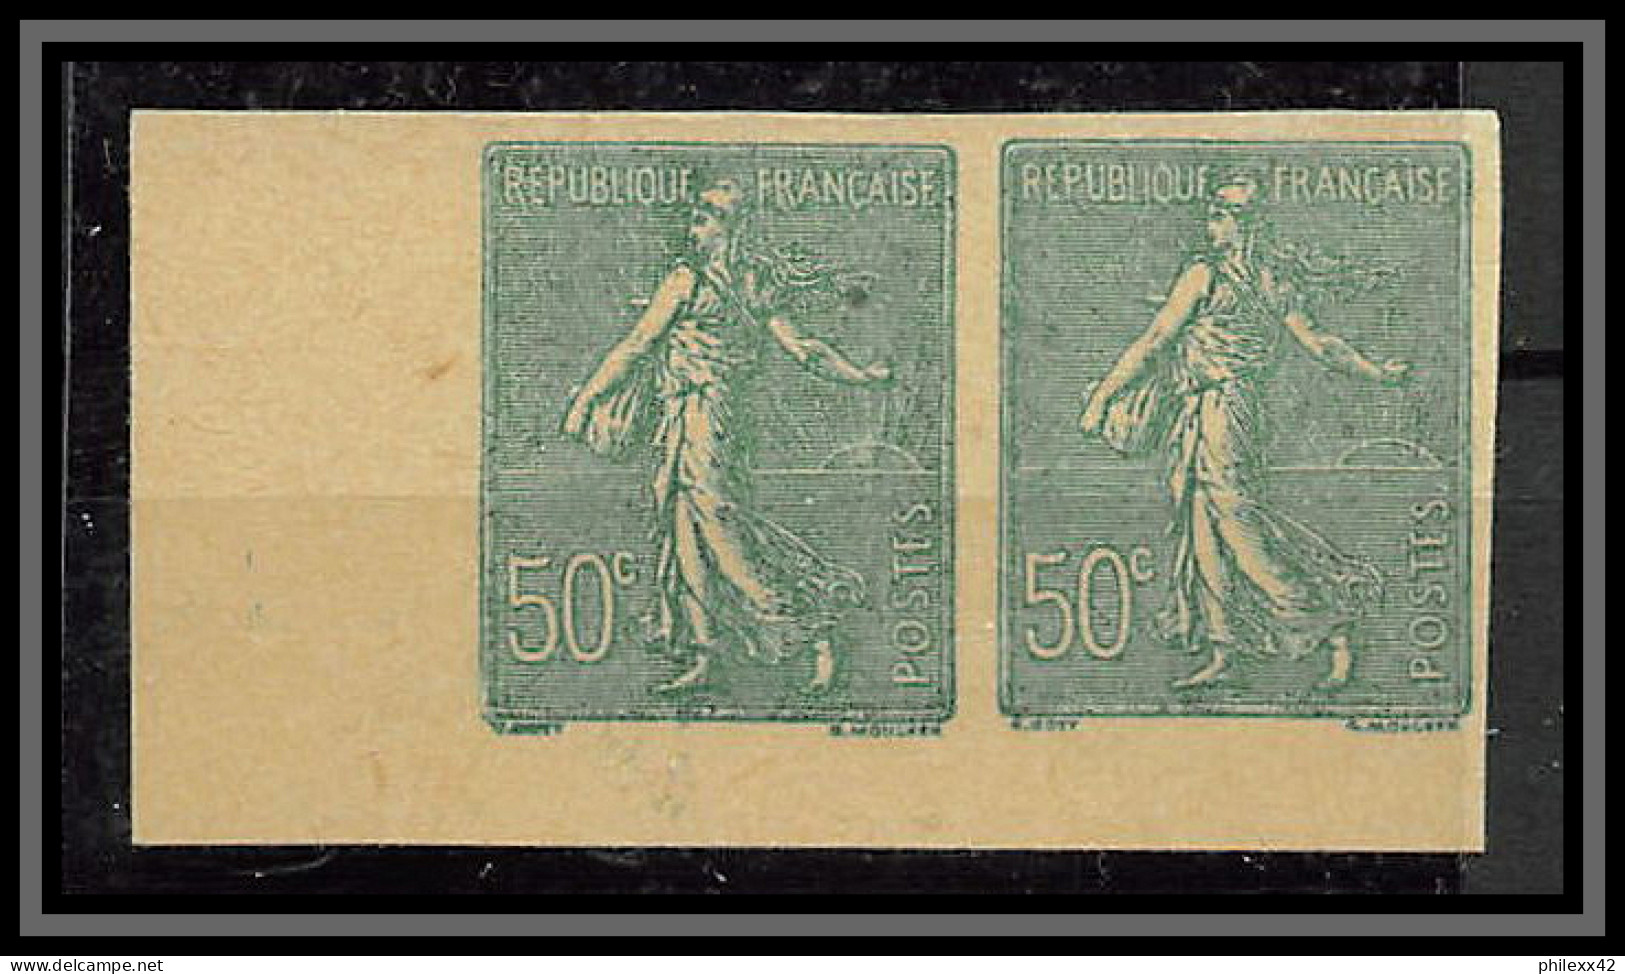 France N°199 50 C Type Semeuse Lignée (*) Mint No Gum TB Cote 280 Non Dentelé Imperf Paire - 1872-1920